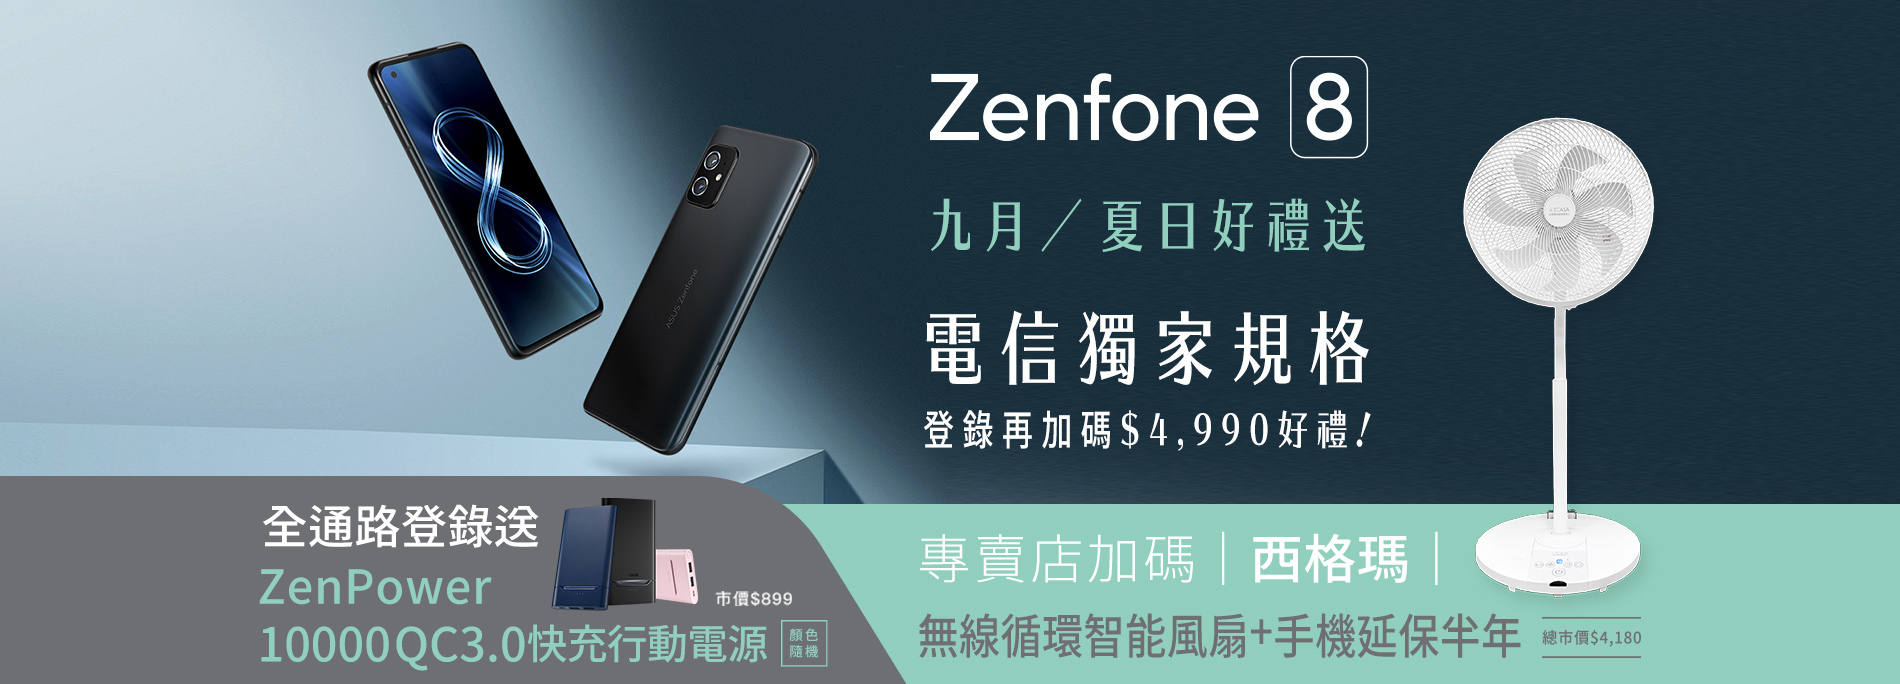 【九月夏日好禮】 Zenfone 8 全通路登錄送 ZenPower 10000 QC 3.0 快充行動電源！指定通路再加碼好禮！